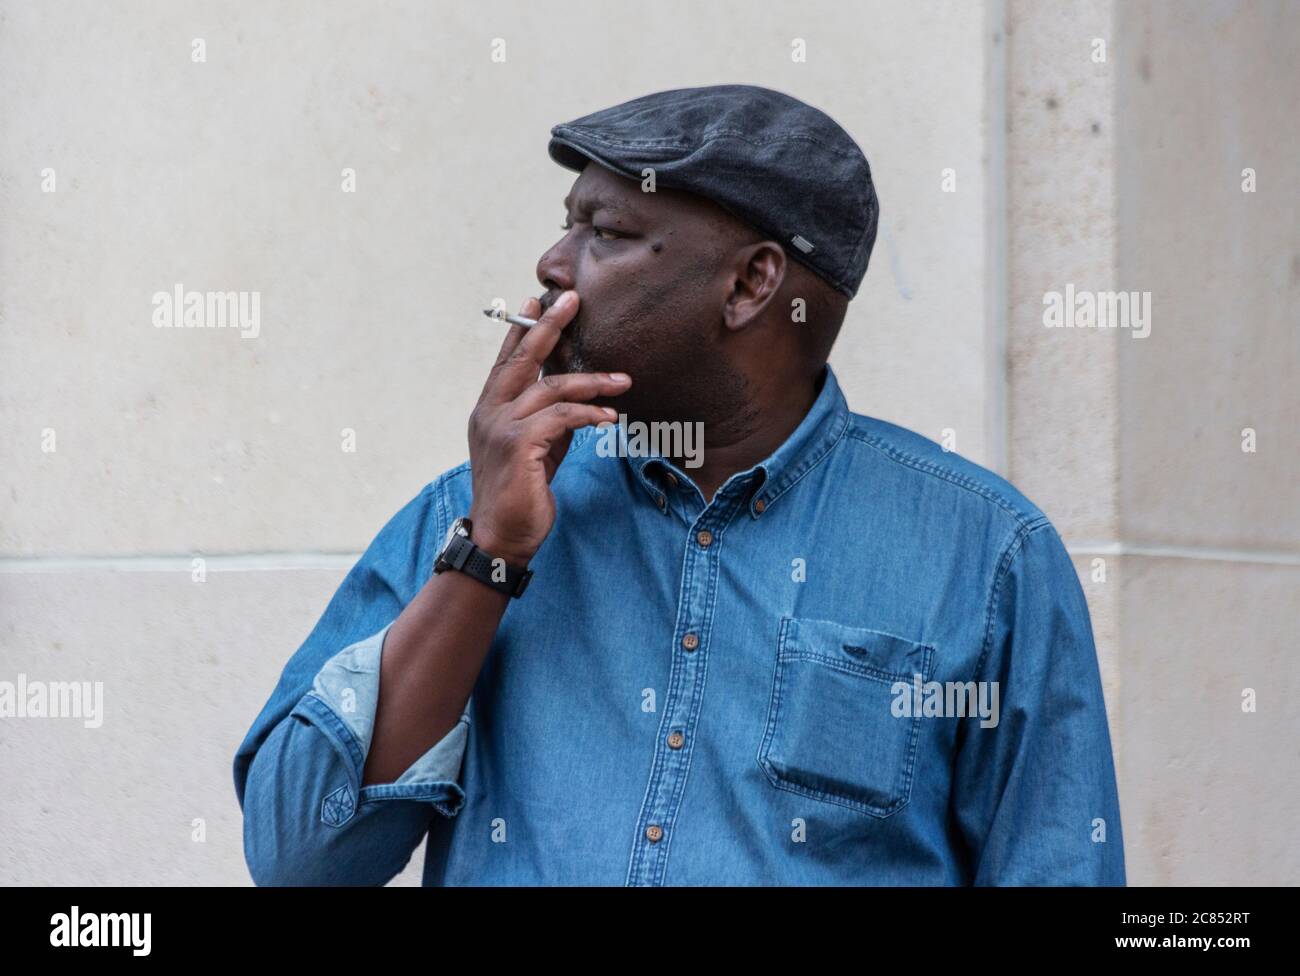 Retrato de un hombre negro fumando en una calle Foto de stock